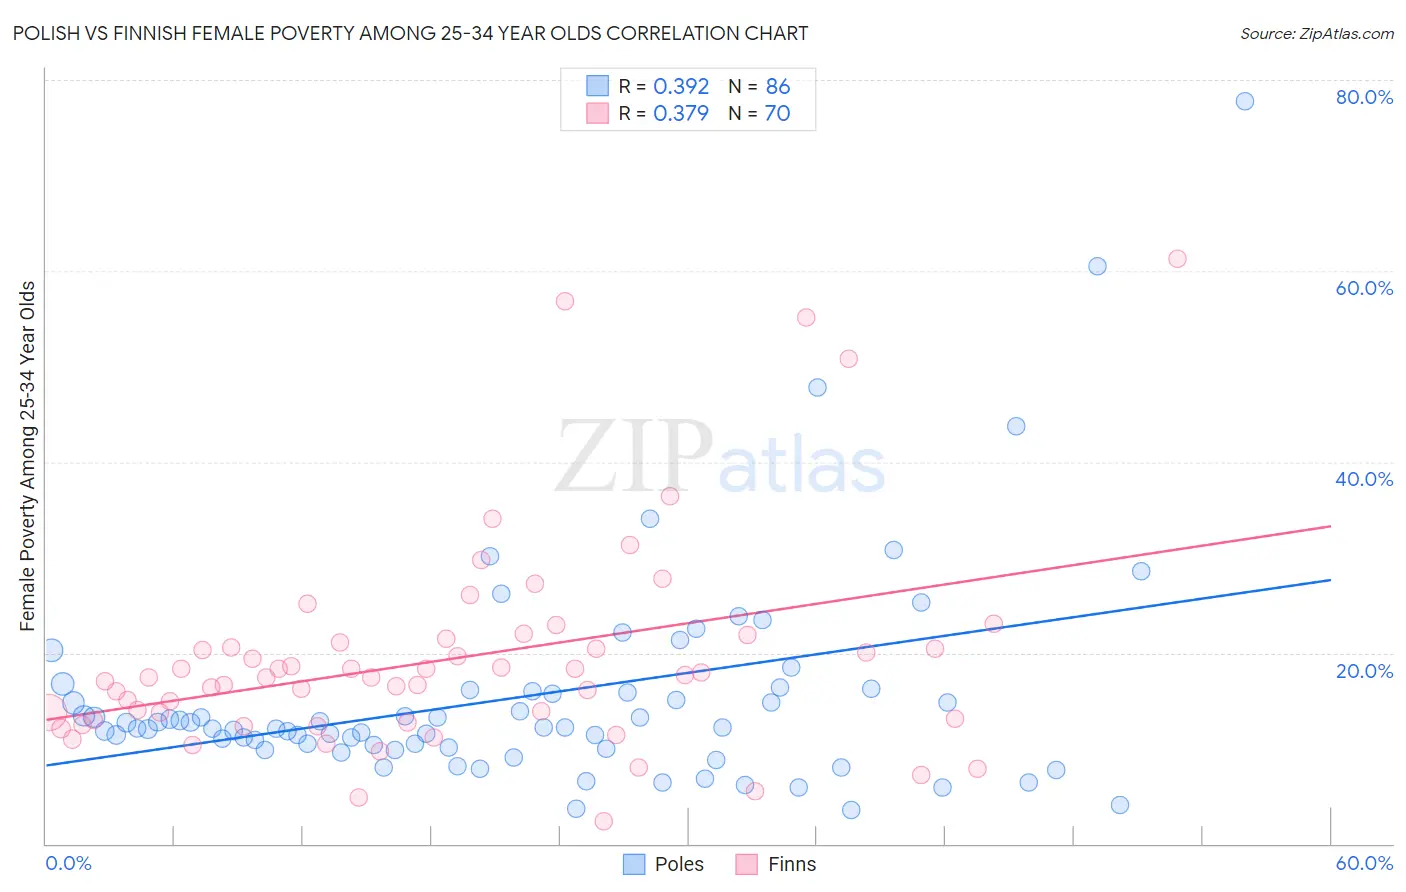 Polish vs Finnish Female Poverty Among 25-34 Year Olds